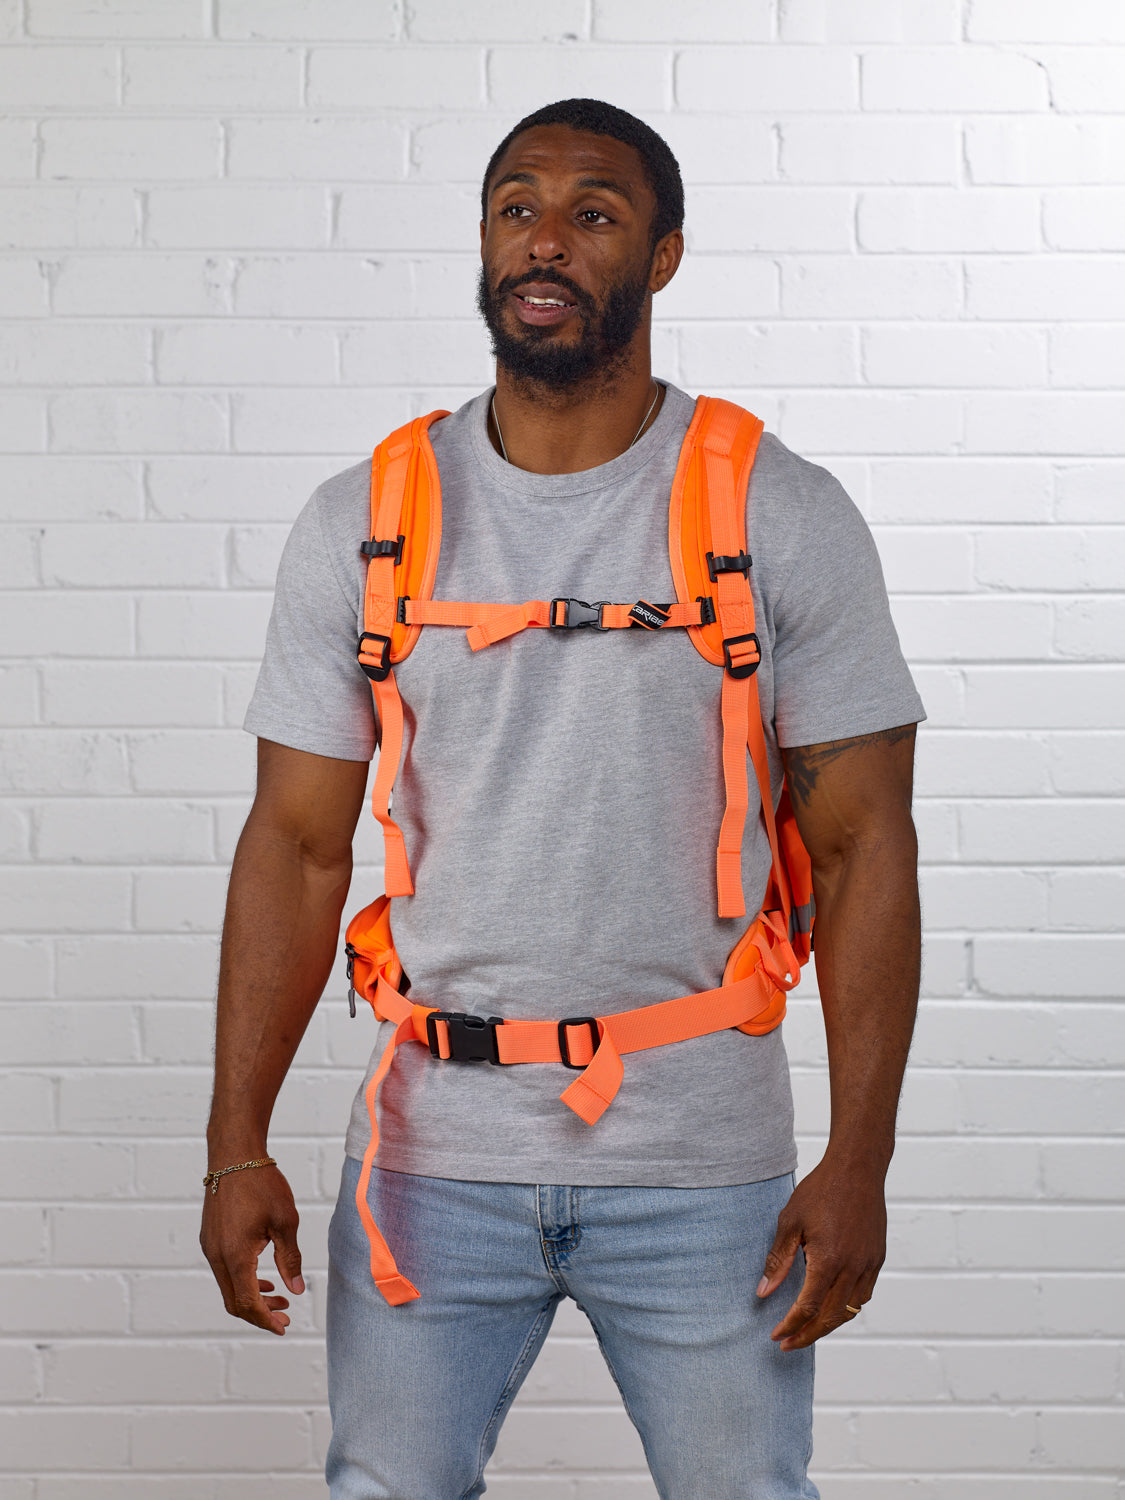 Caribee Mineral King Hi Vis Orange Safety backpack harness